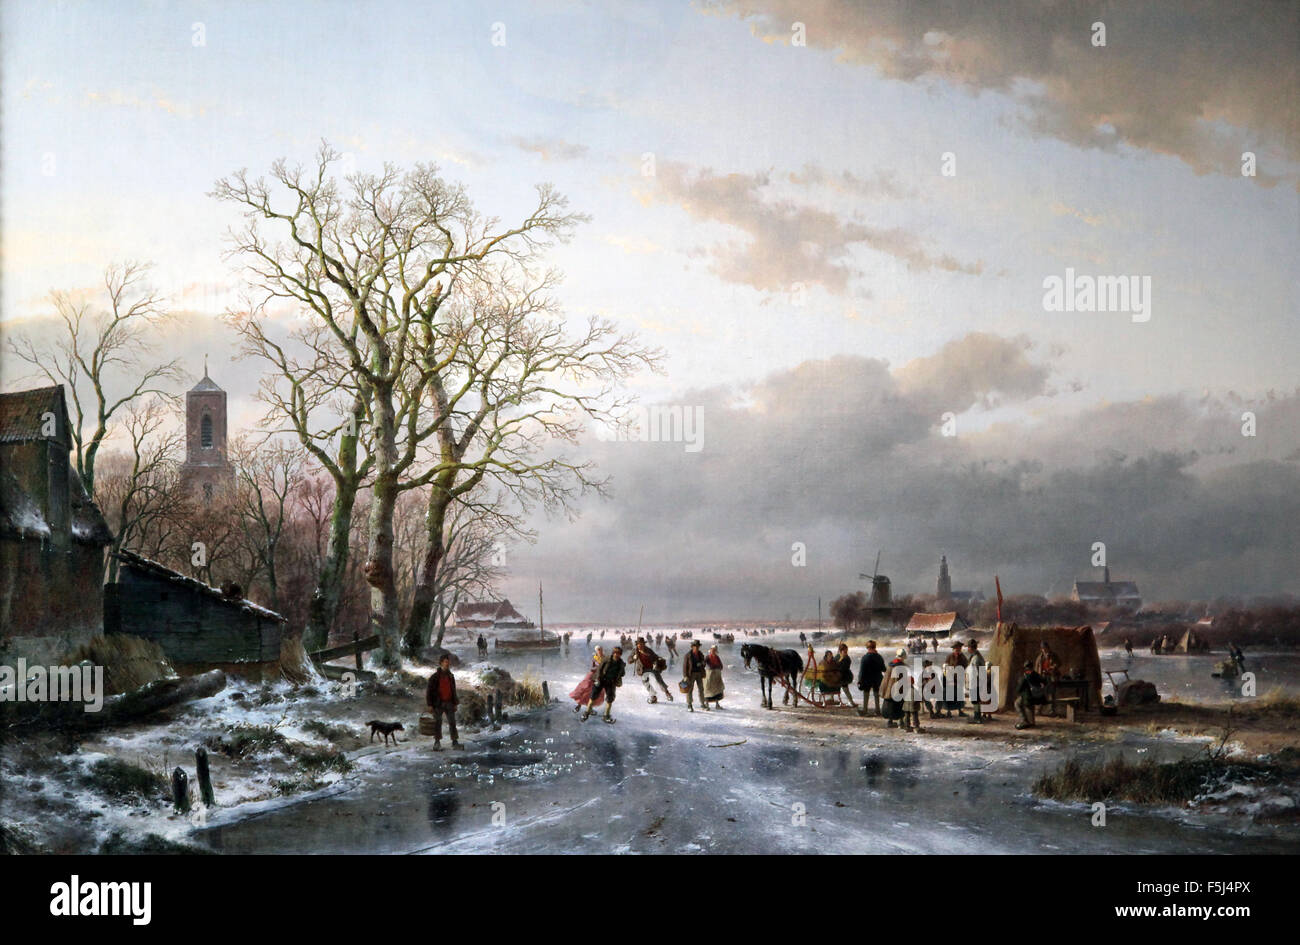 Zahlreiche Skater und ein Pferdeschlitten an einem Imbissstand in der Nähe einer niederländischen Stadt 1857 Gemälde von Andreas Schelfhout 1787-1870 Niederländischer Maler, Radierer Stockfoto